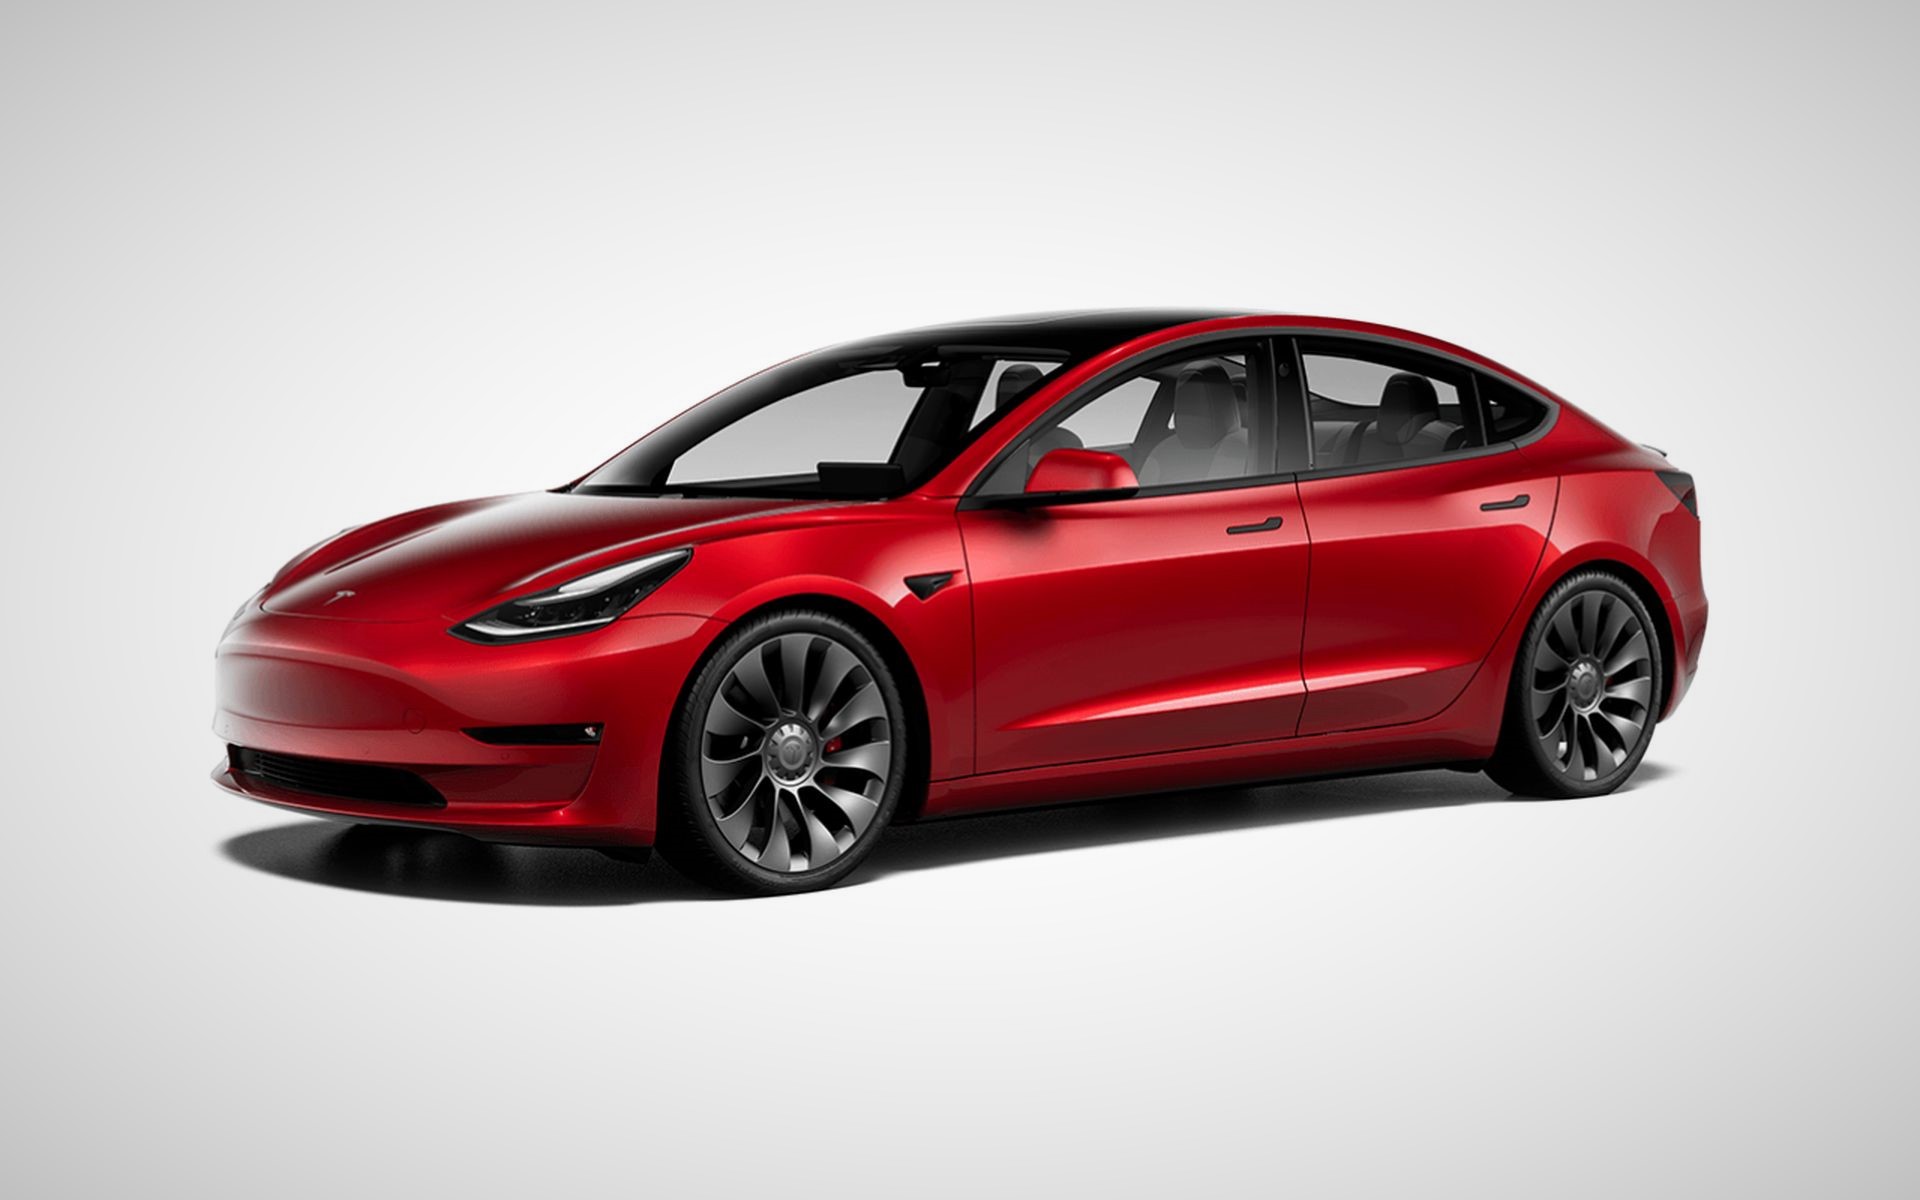 Autonomie : la Tesla Model 3 en tête du classement EPA